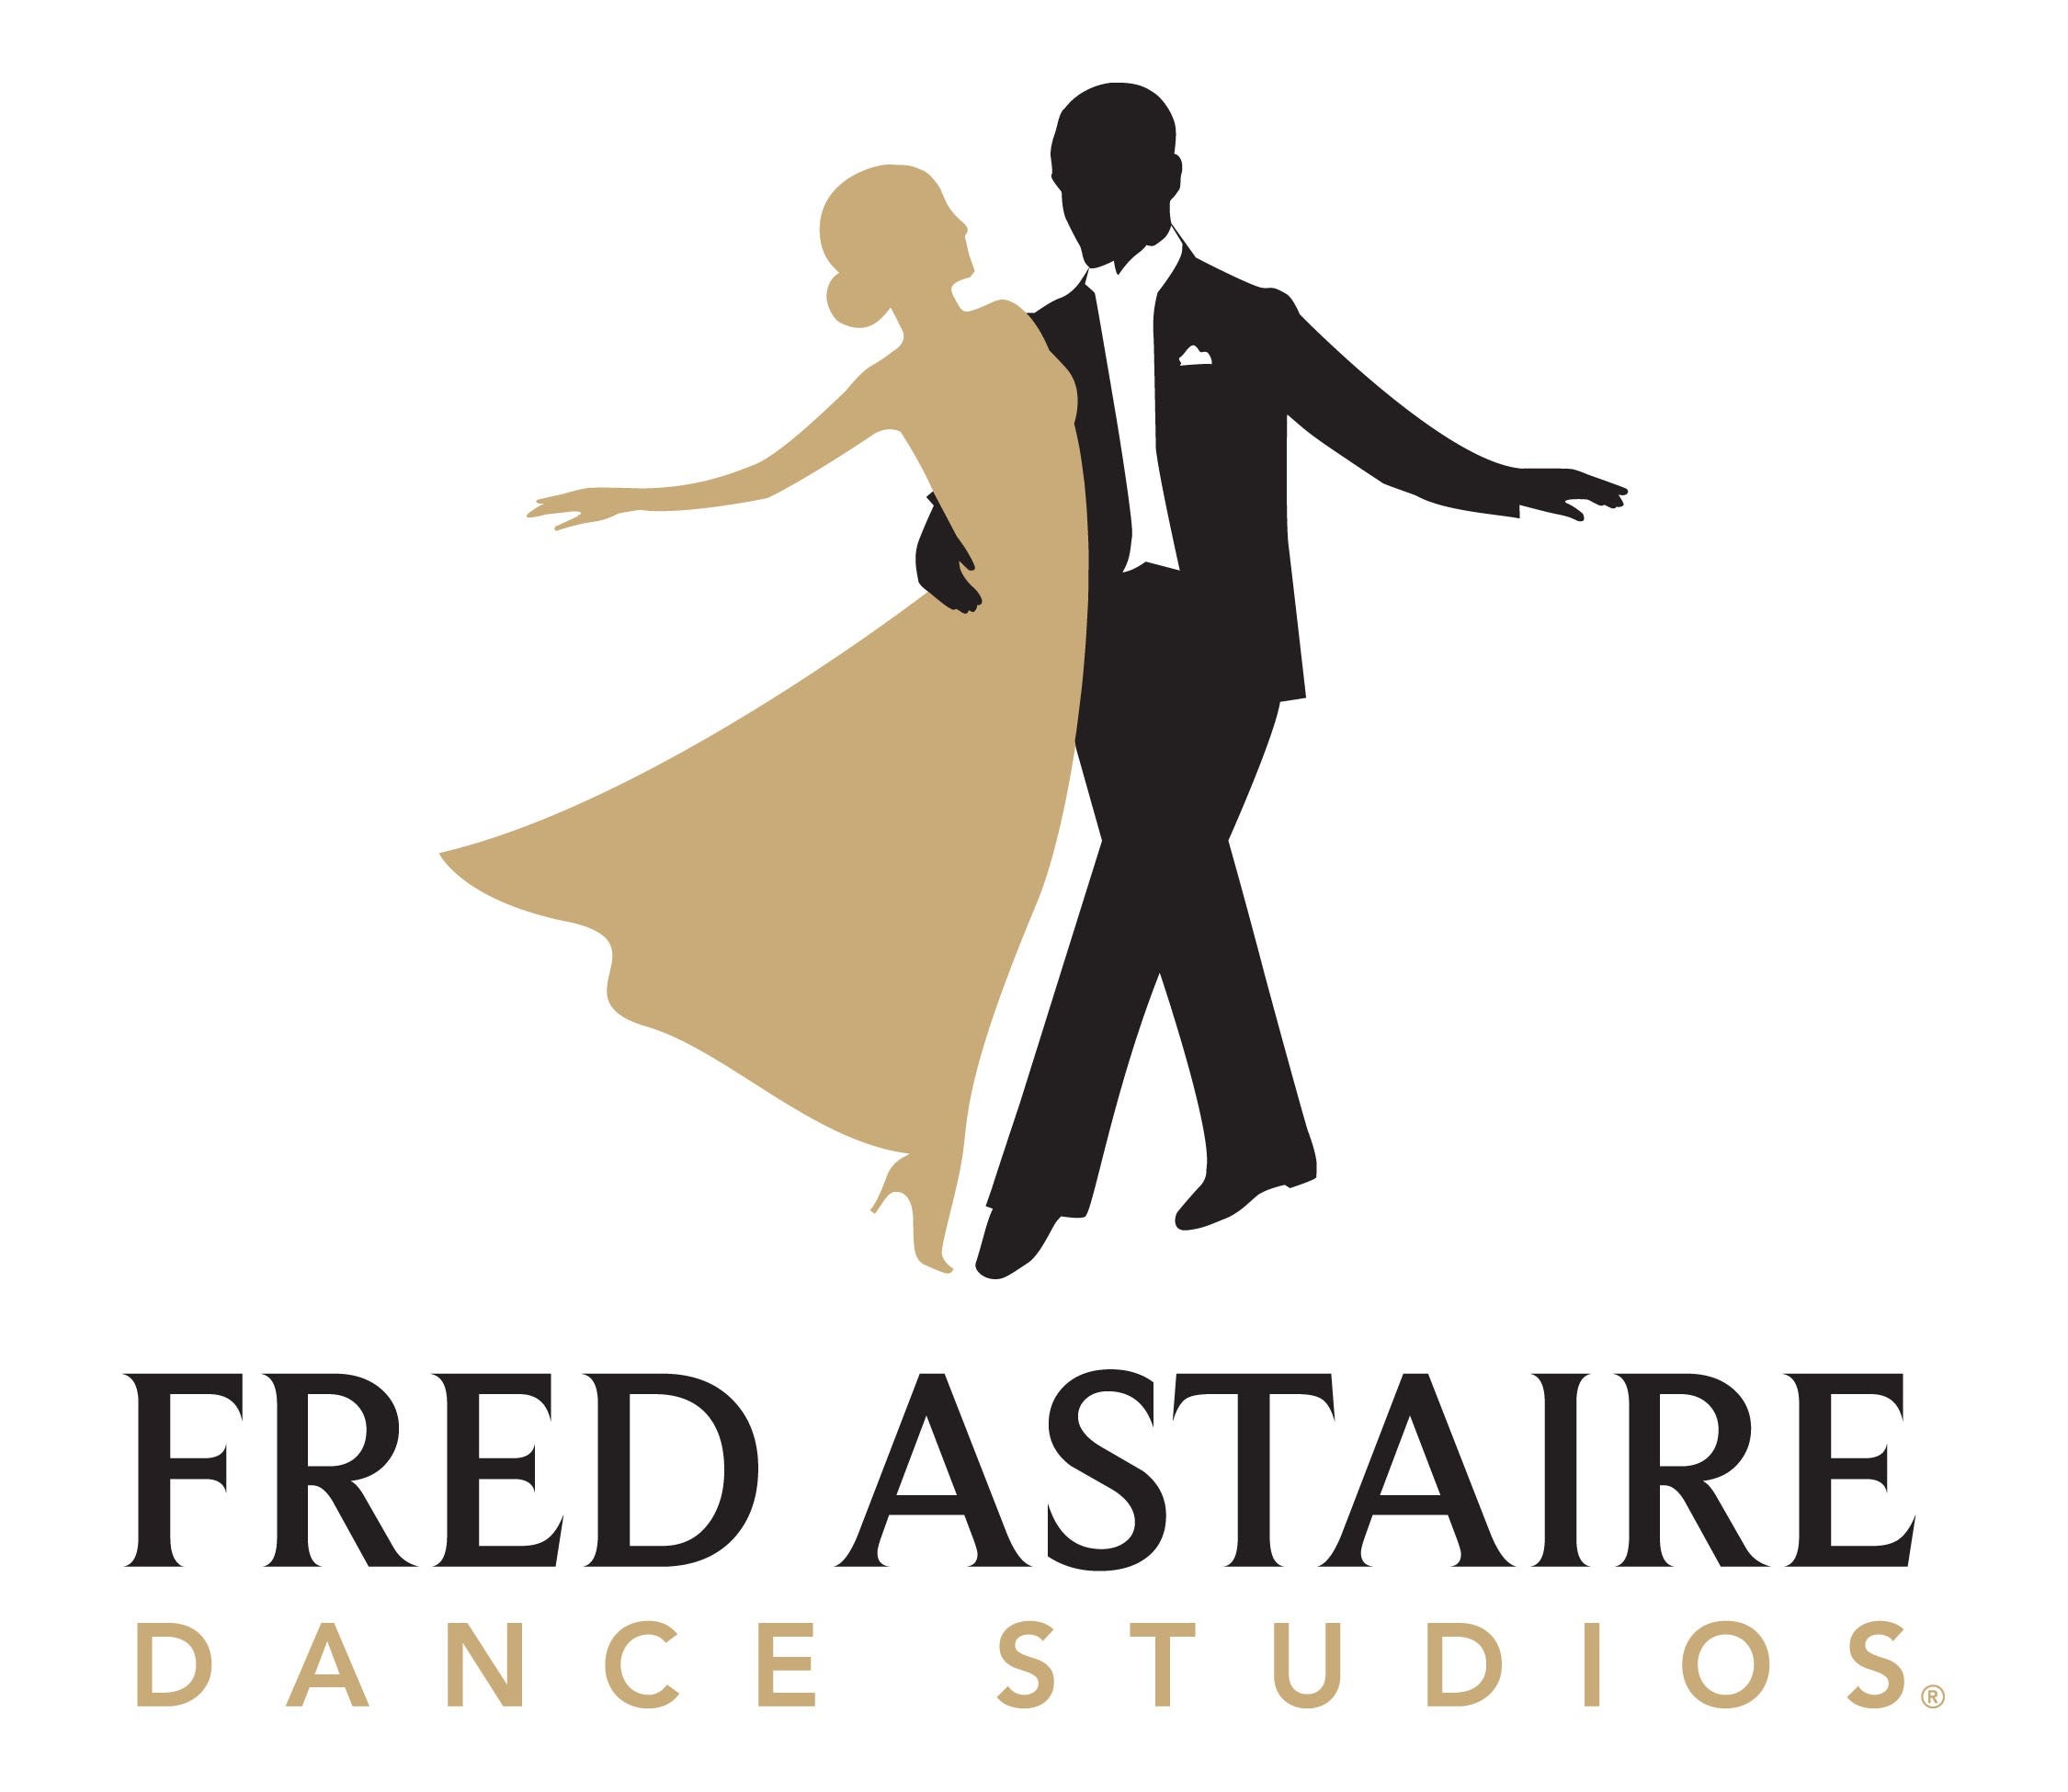 FRED ASTAIRE DANCE STUDIOS - LOGO.jpg